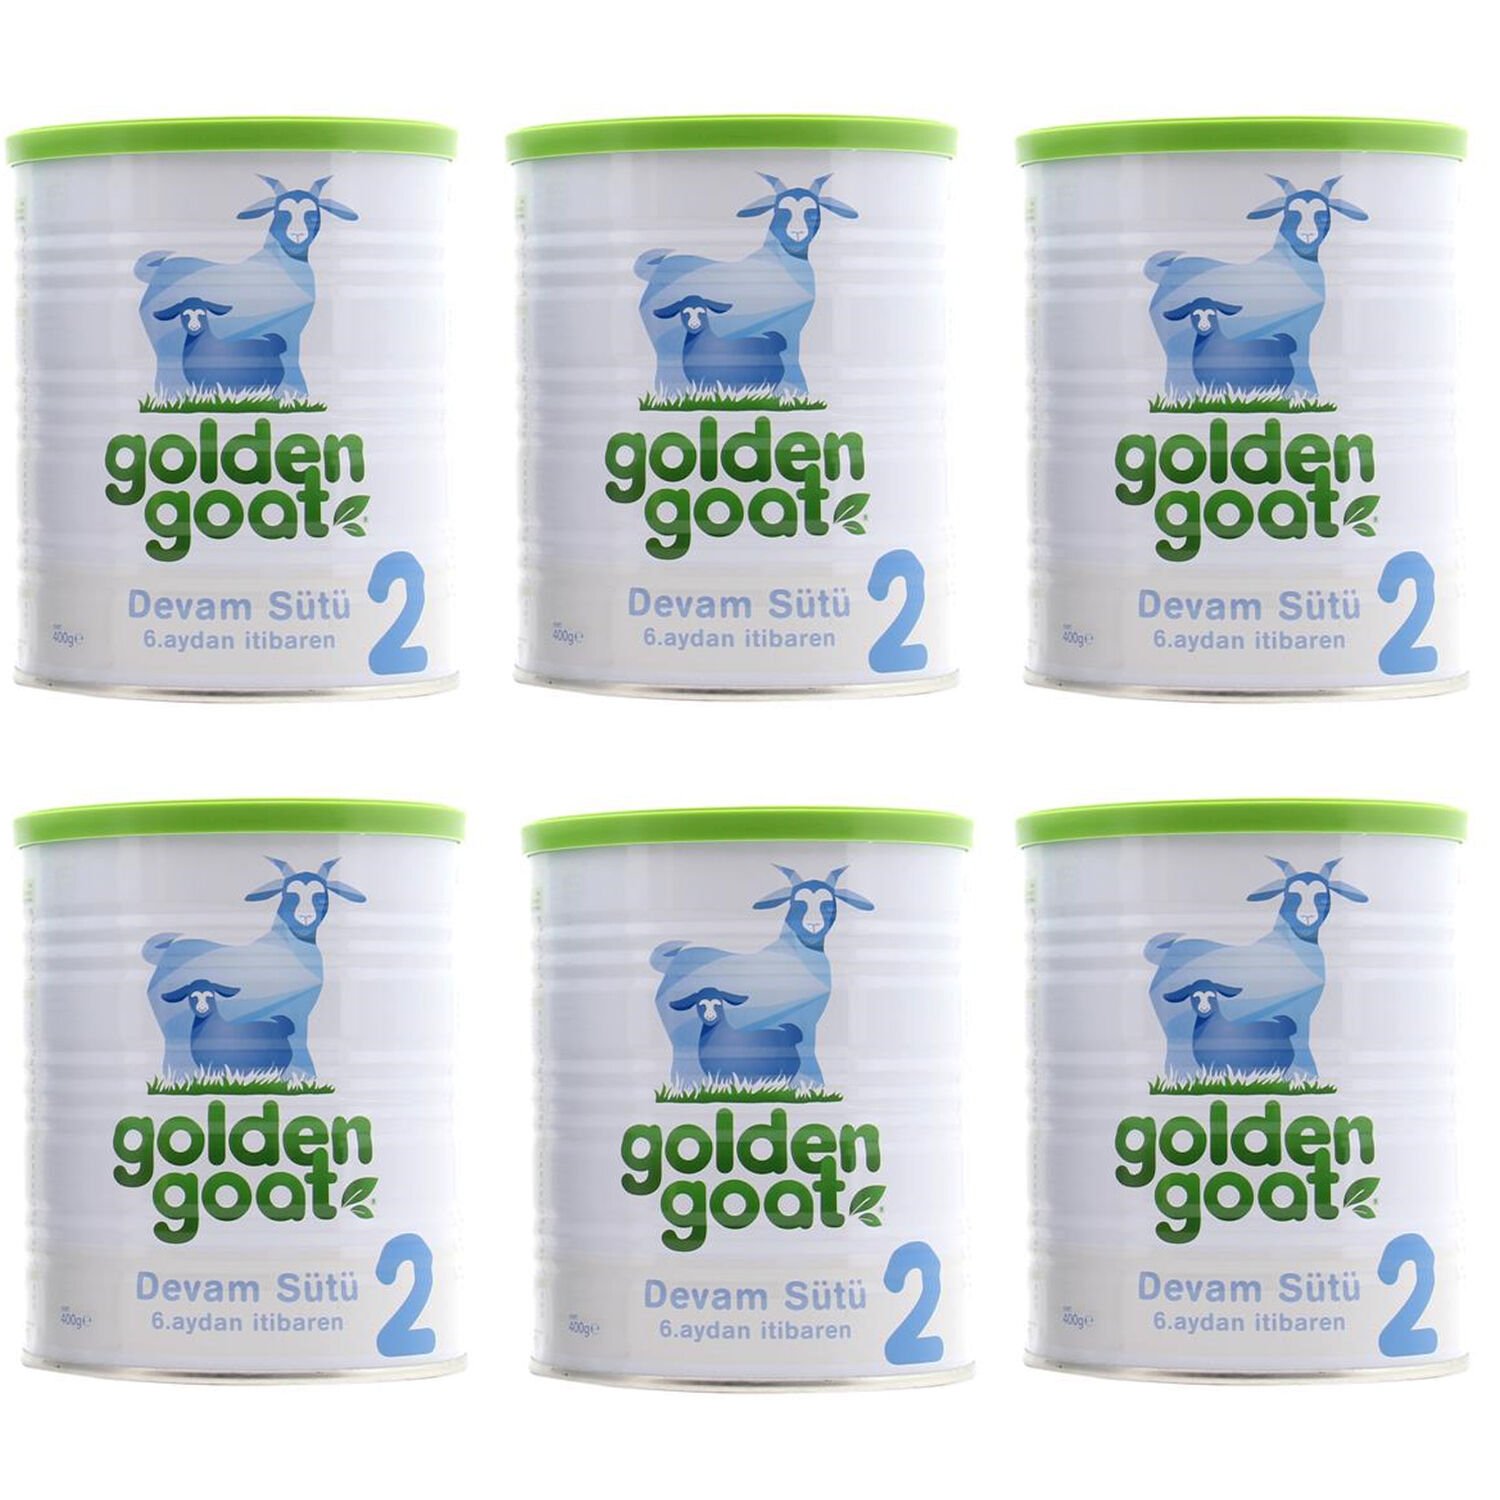 Golden Goat 2 Keçi Devam Sütü 400 gr 6 lı PAKET